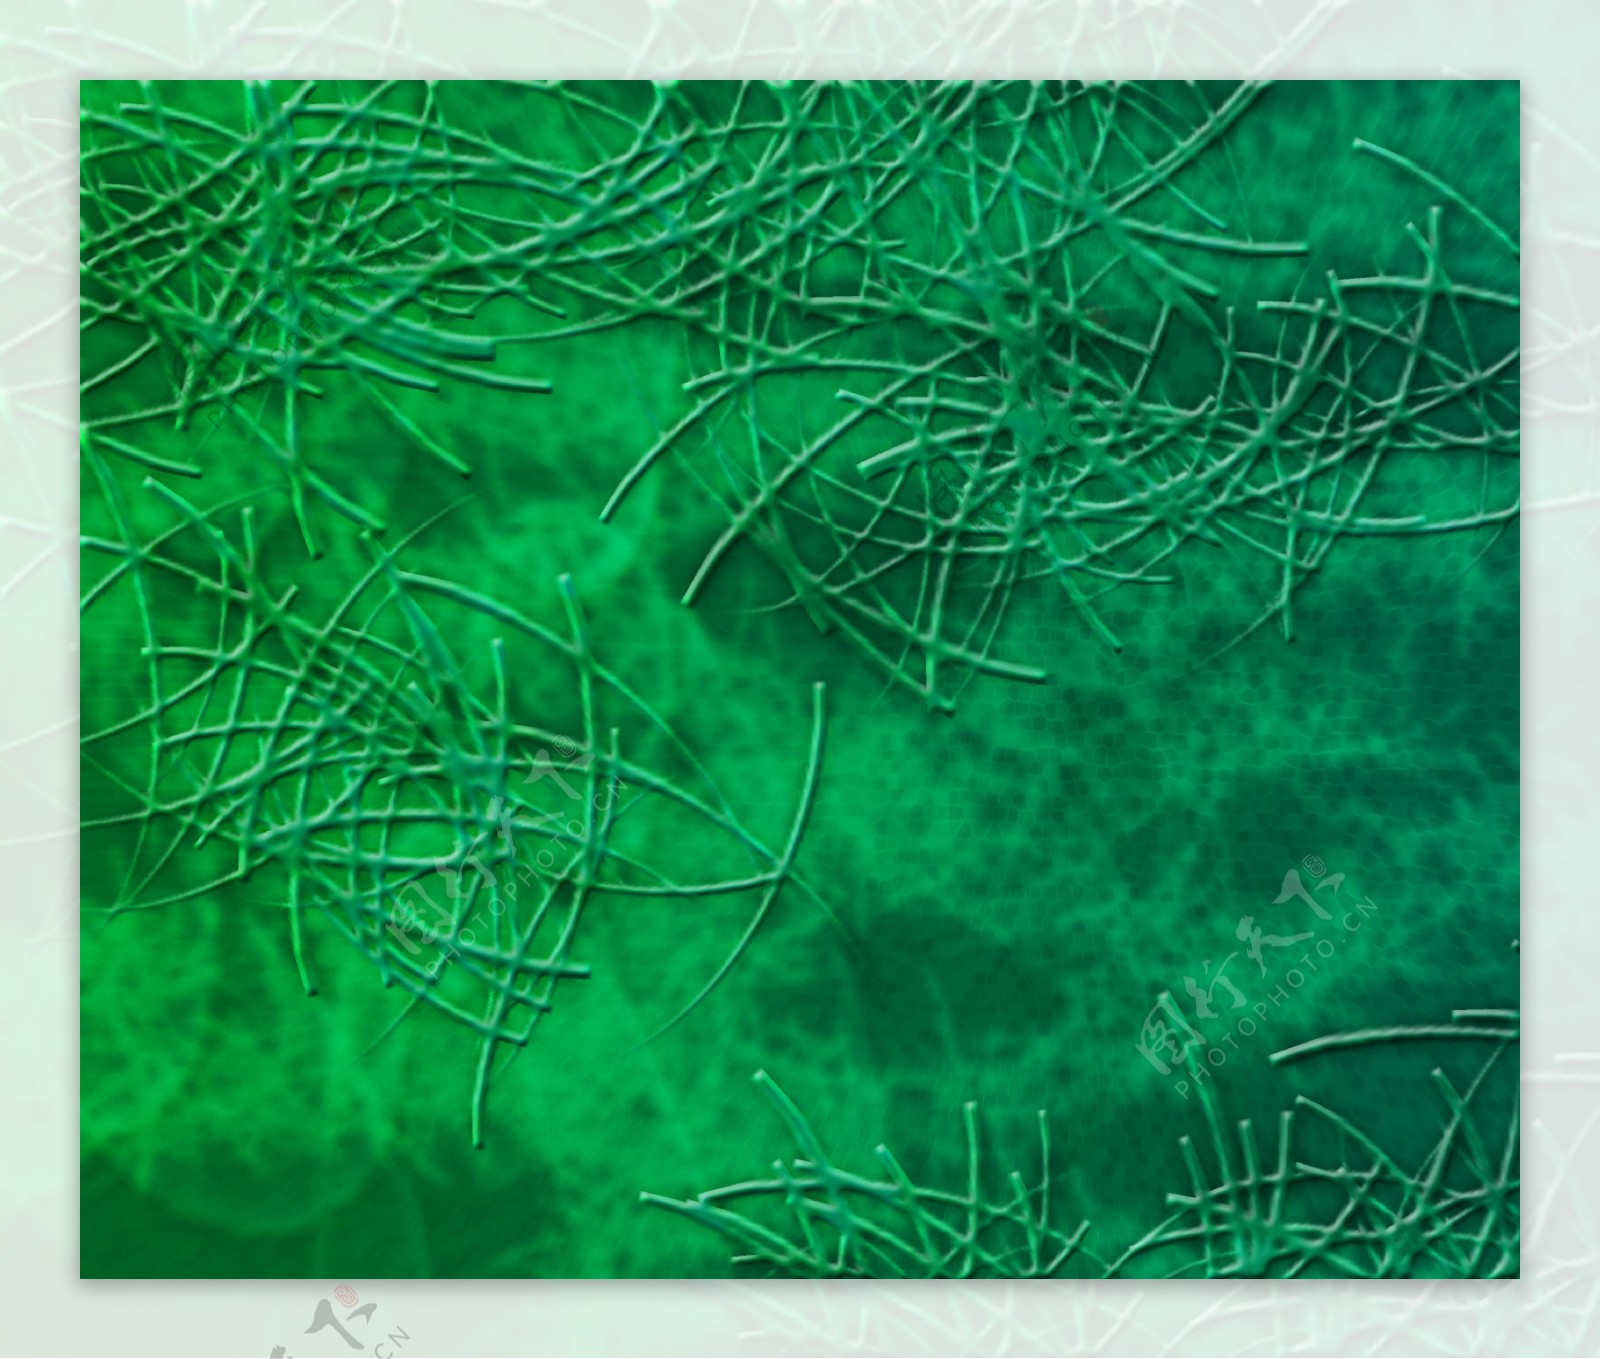 绿色微生物纹理